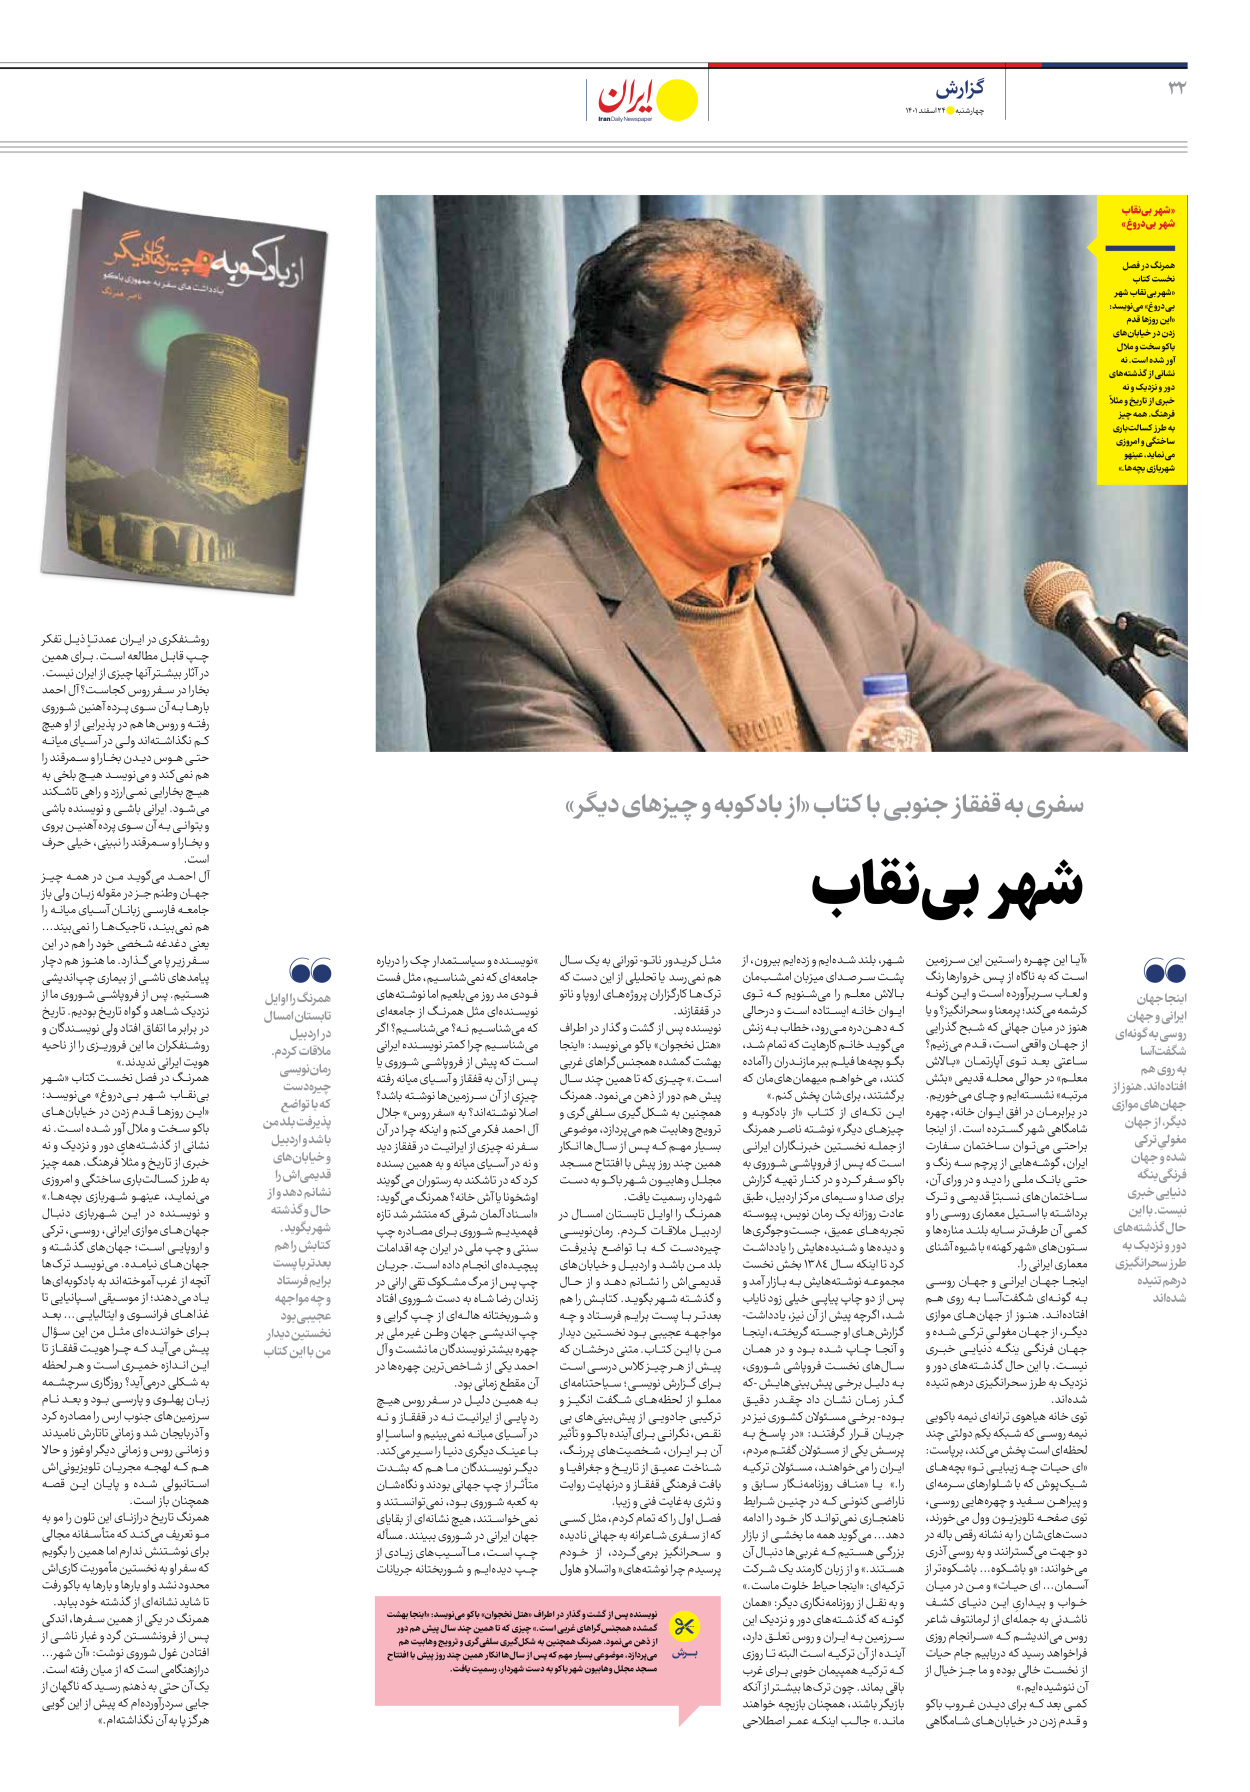 روزنامه ایران - ویژه نامه ویژه نوروز - ۲۴ اسفند ۱۴۰۱ - صفحه ۳۲